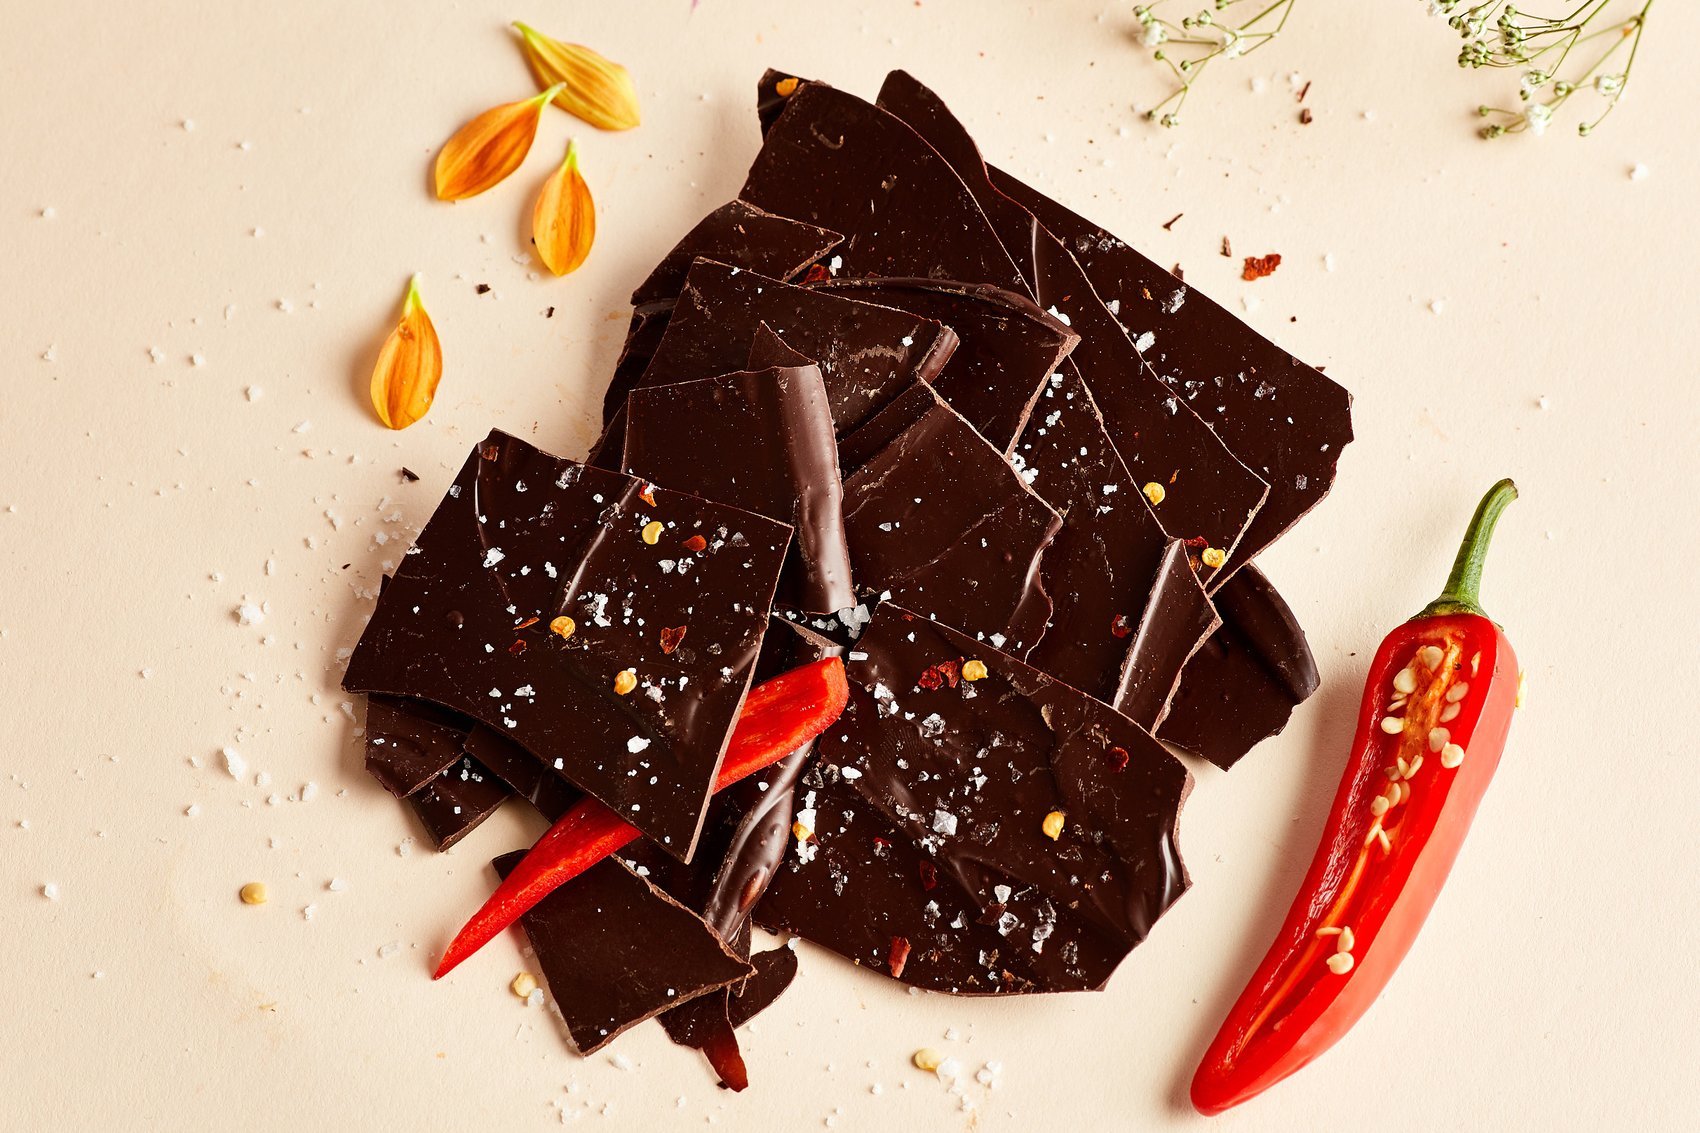 Goalz chocolate - 🧡 Шоколад горький - польза и вред для здоровья.